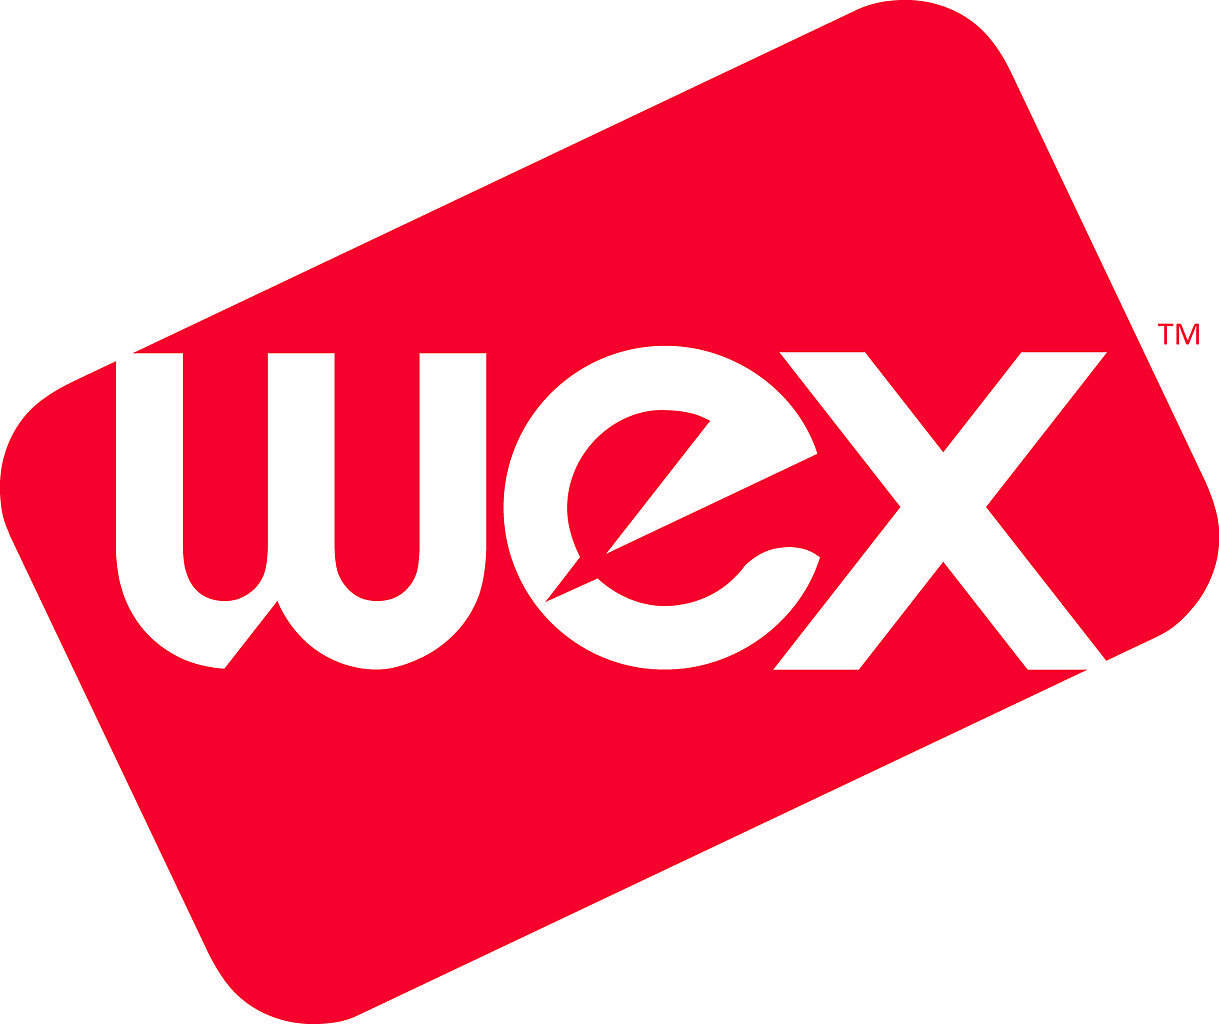 Wex fleet card logo